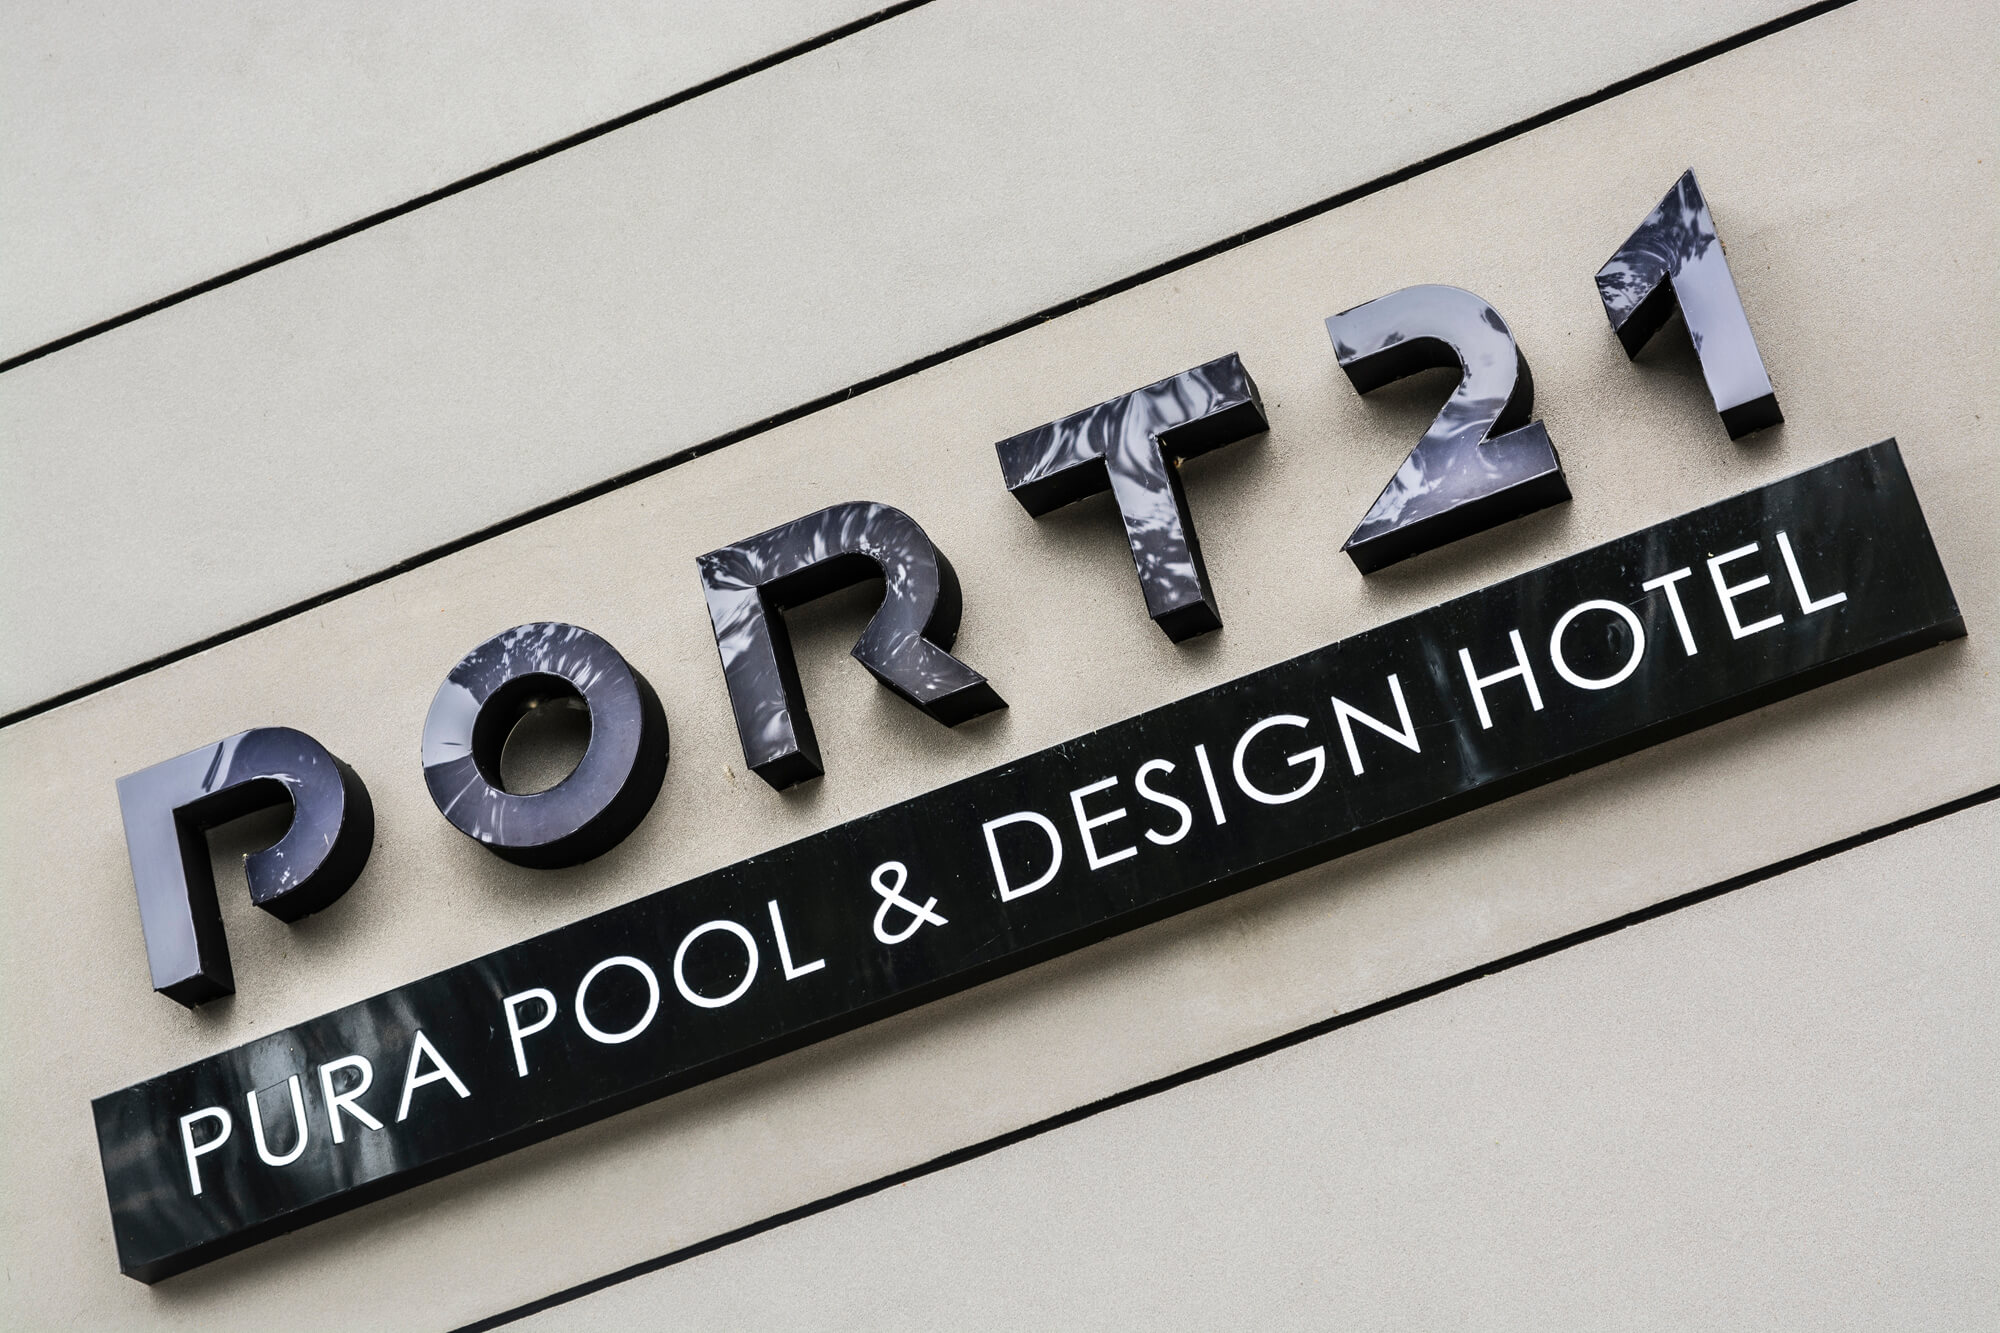 Porta 21 - Port 21 - lettere luminose 3D poste sul muro, in plexiglass